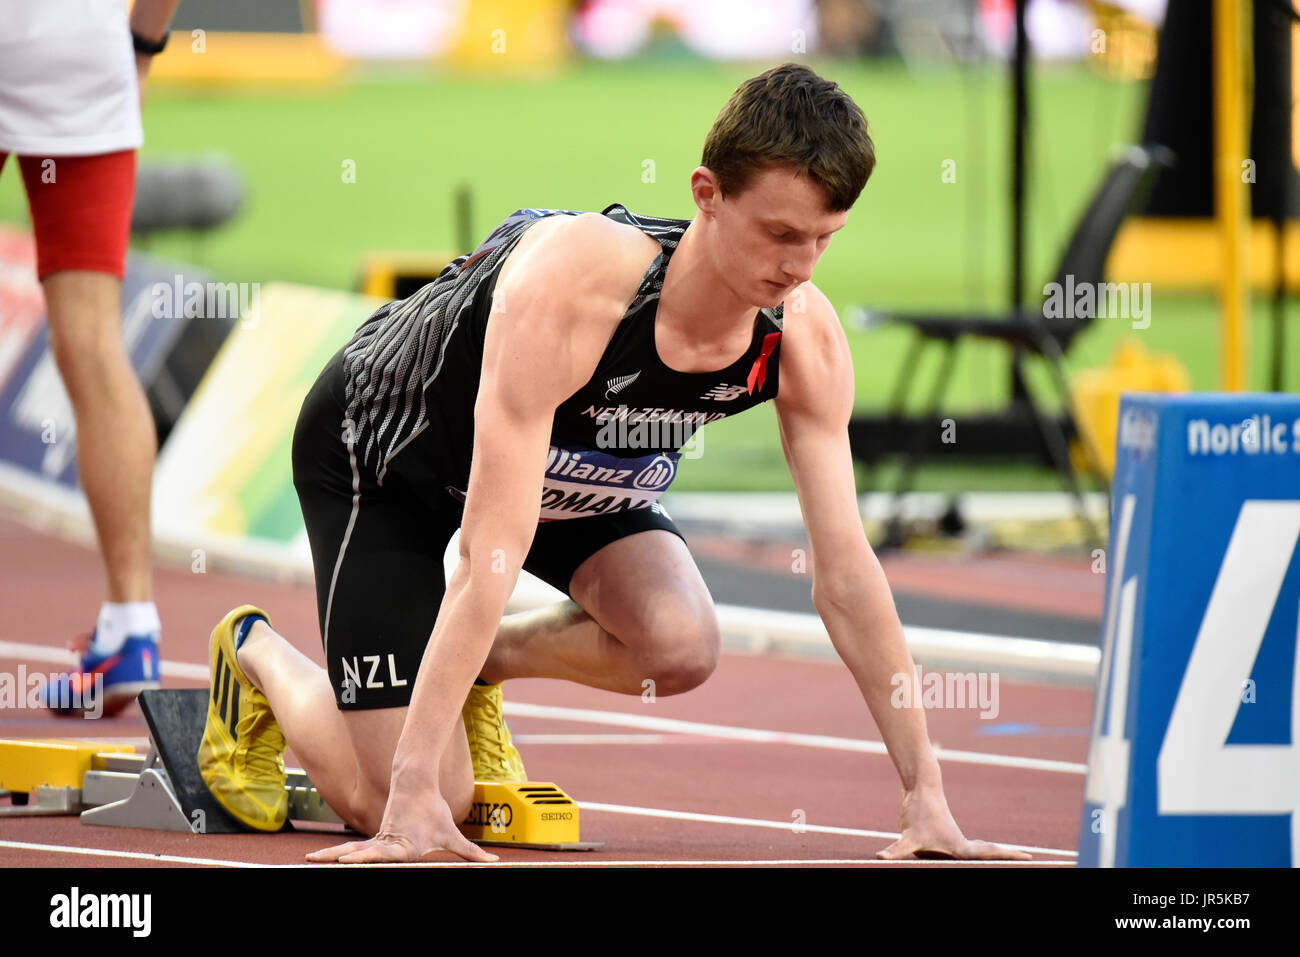 William Stedman compitiendo en la final de T36 400m en el Campeonato Mundial de Atletismo, London Stadium Foto de stock